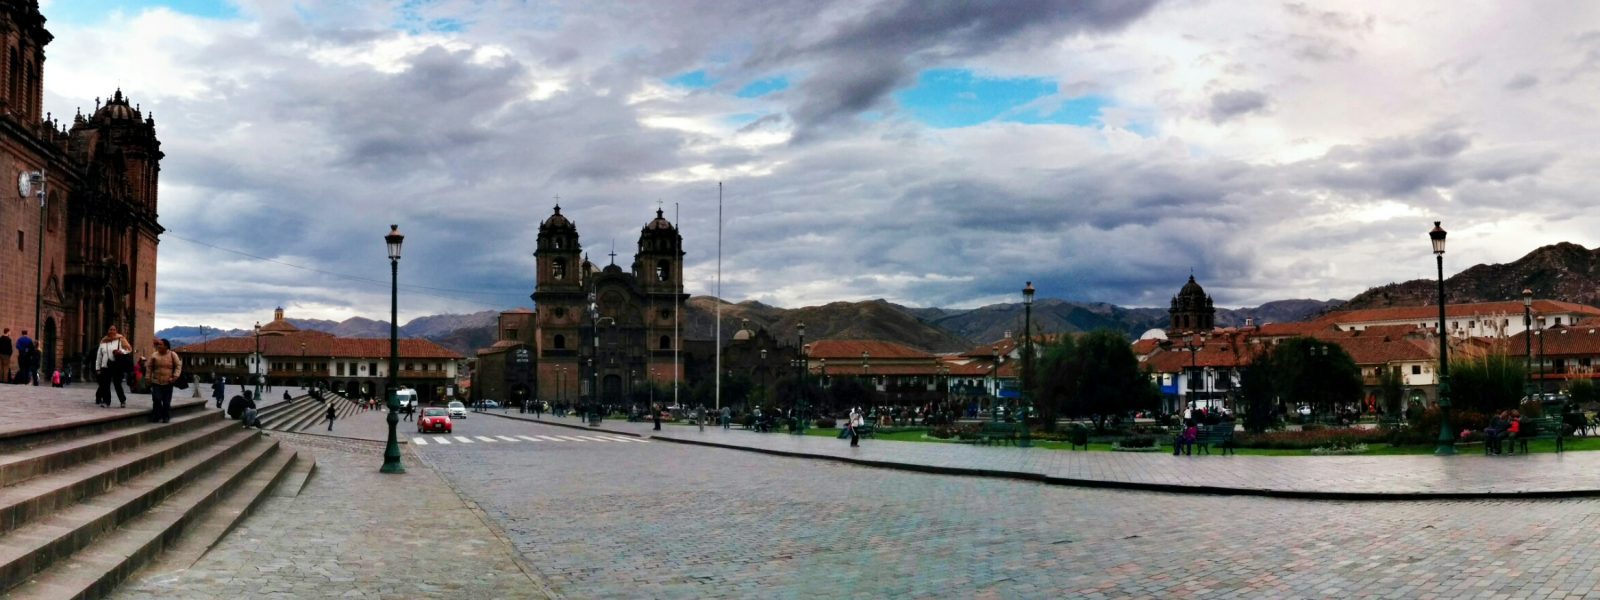 Peru: Cusco, The Preparation